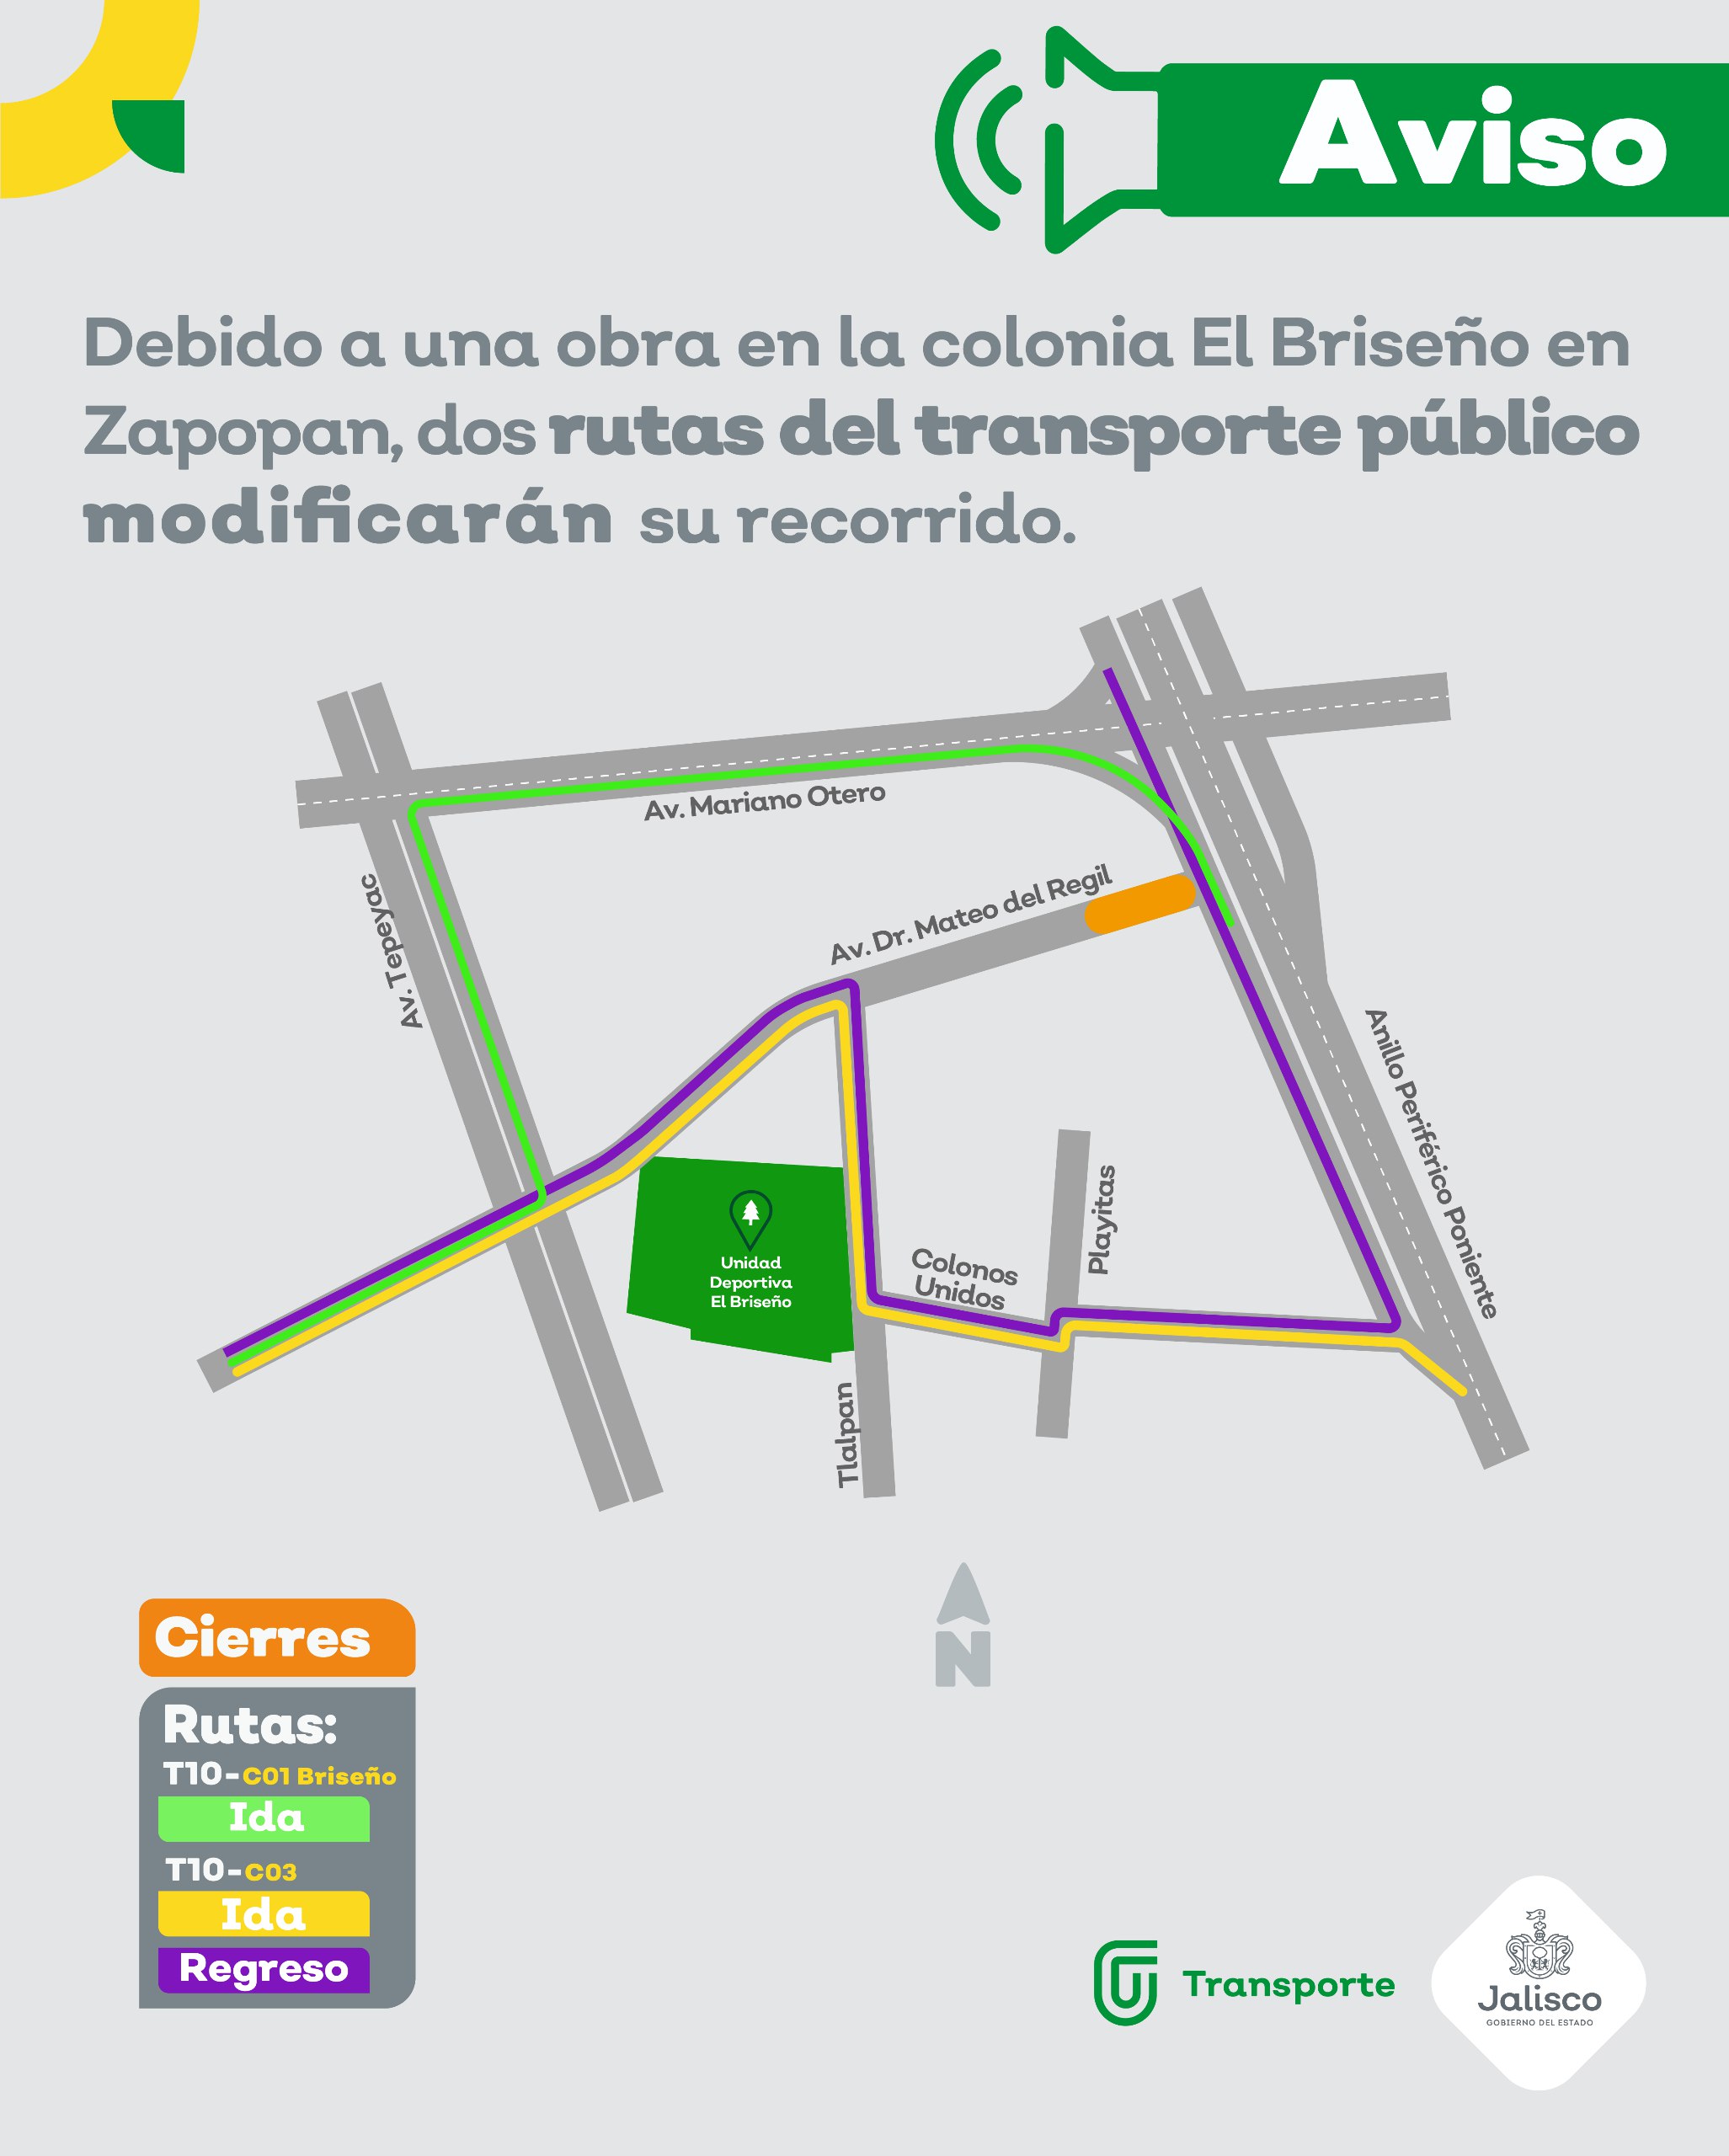 Por obras de infraestructura vial en la Colonia El Briseño, las rutas T10-C01 Briseño y T10-C03 modificarán su derrotero